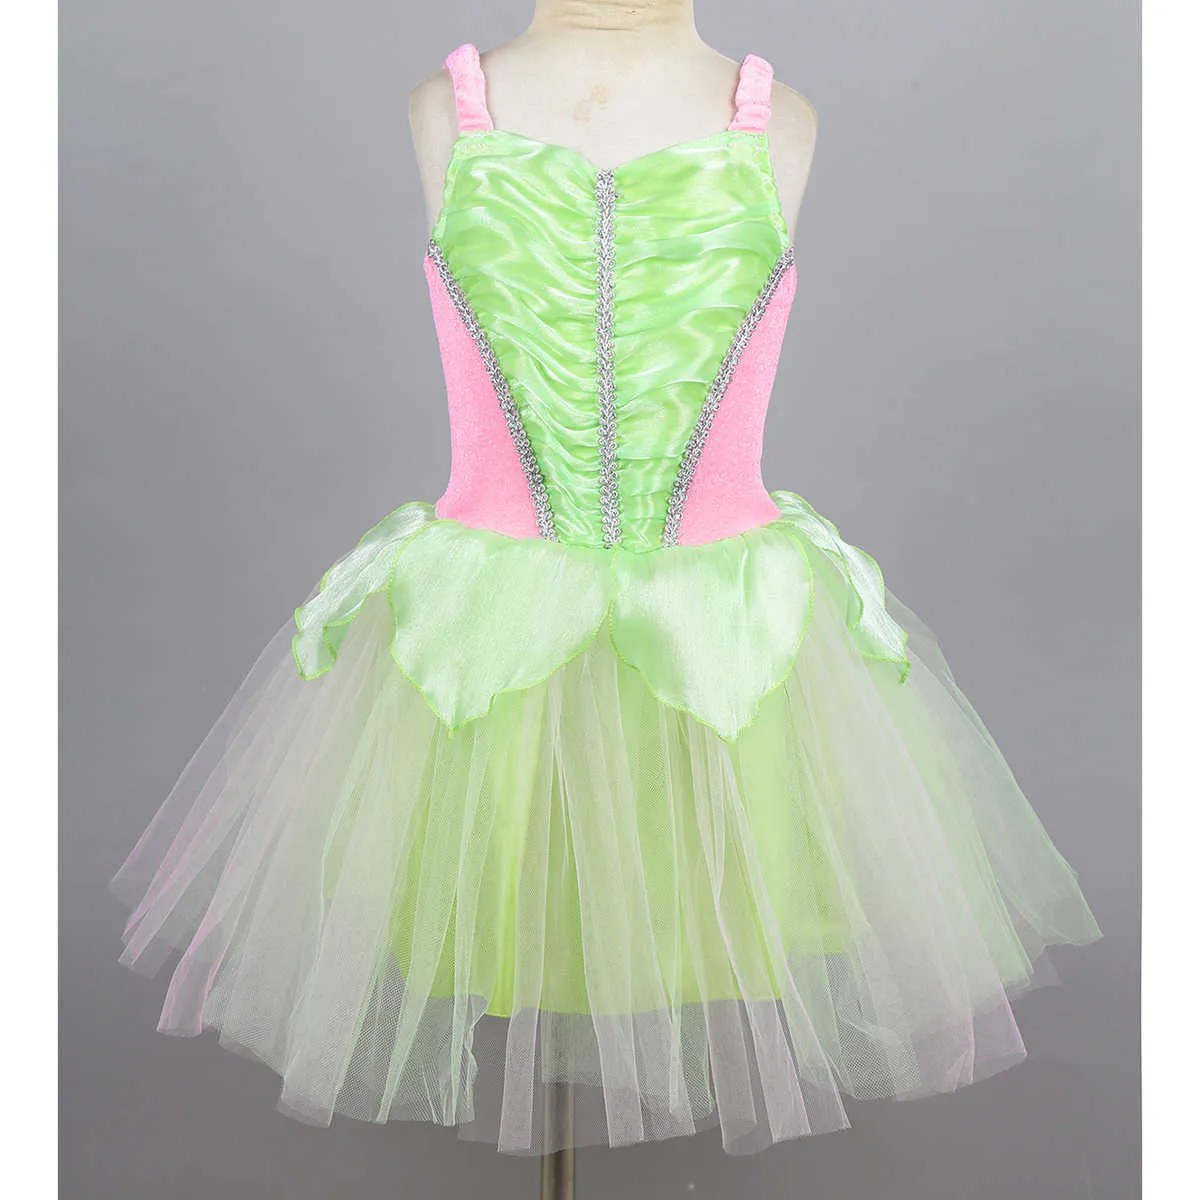 Tiaobug dla dzieci dziewczęta księżniczka bajka kostium bez rękawów sukienka z siatką błyszczące skrzydła Zestaw dzieci Halloween Cosplay Party G09253493353